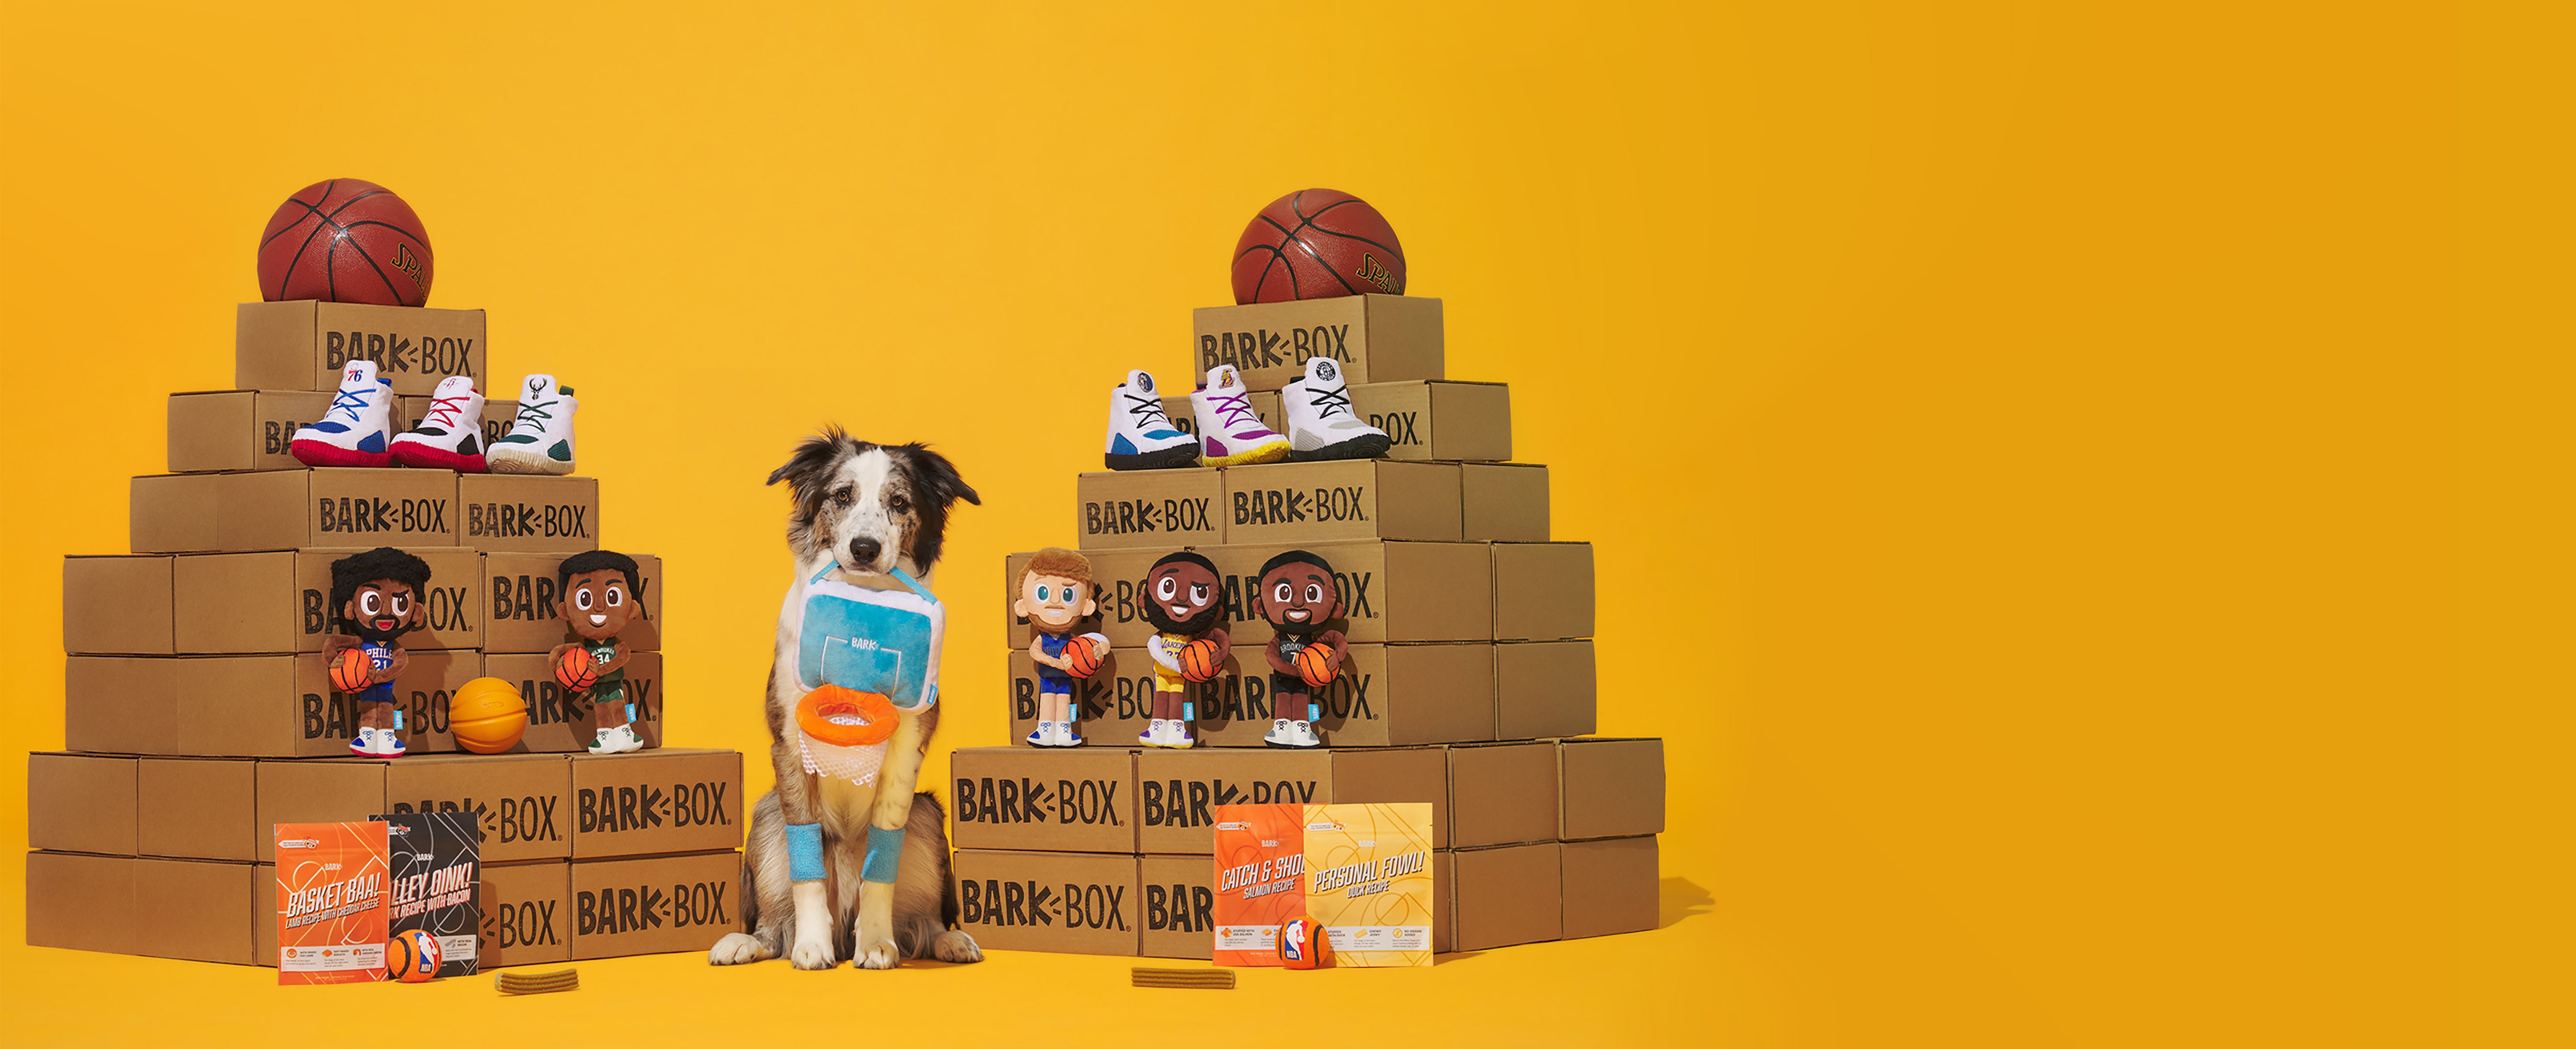 Bark Box NBA Jersey NBA 76ers Jersey Size Small Dog Jersey New!